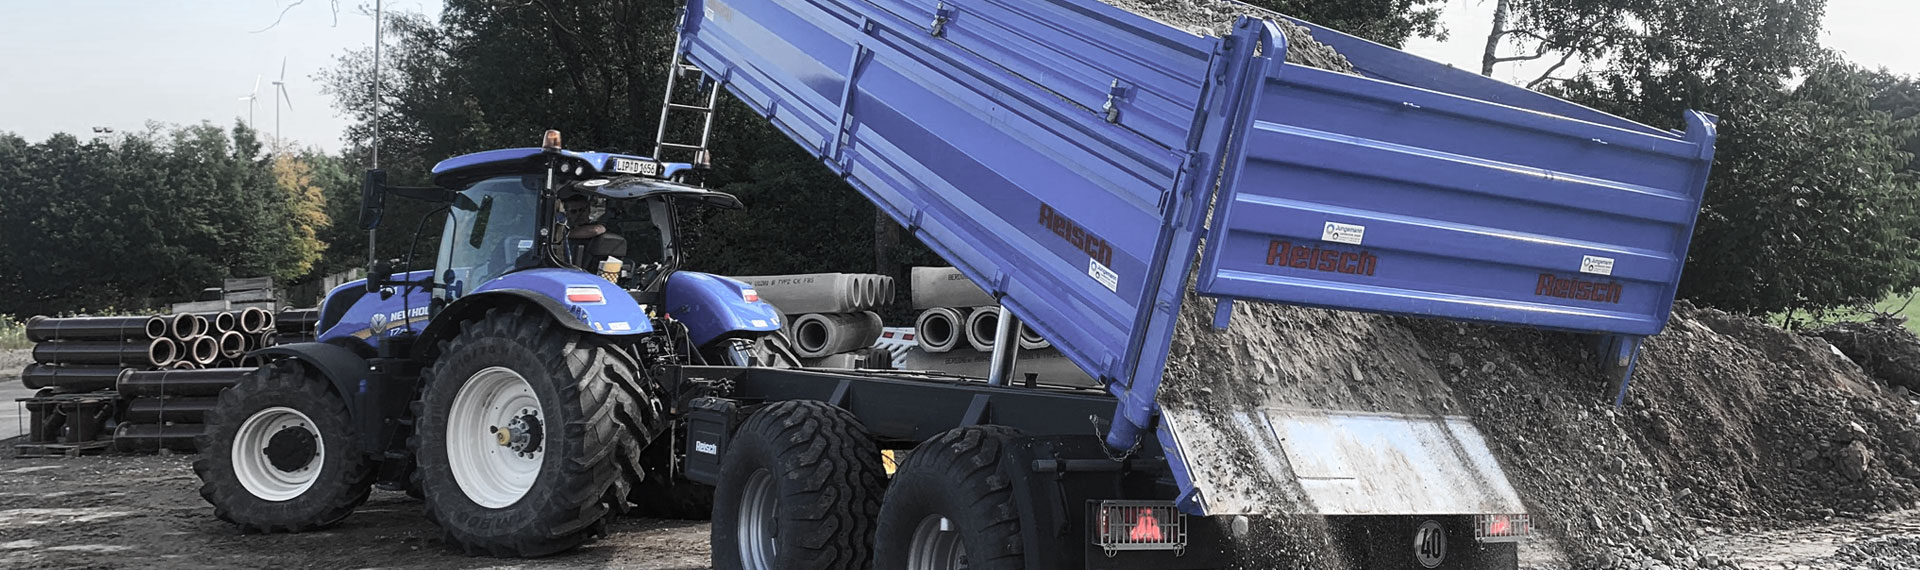 Un volquete azul con carrocería fabricada con chapa de acero Hardox® descargando rocas.